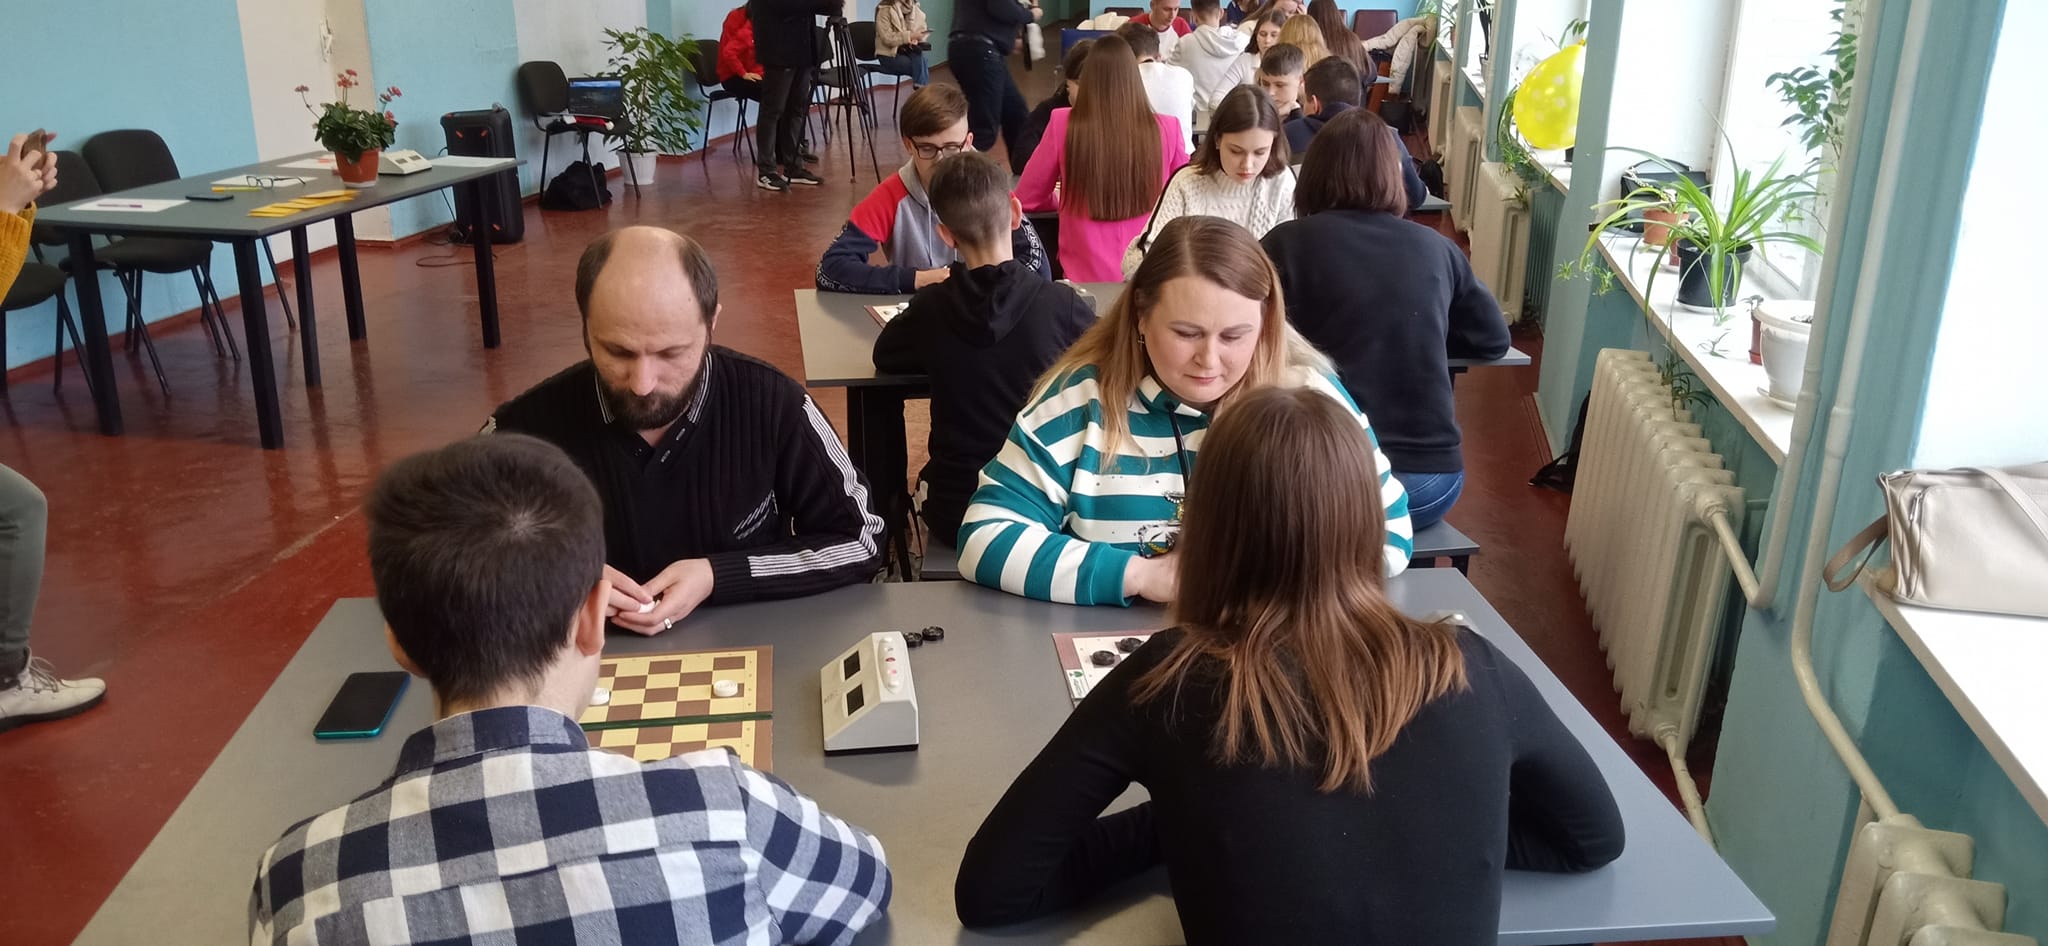 Из Каменского с любовью: в городе состоялся шашечный турнир ко Дню святого Валентина